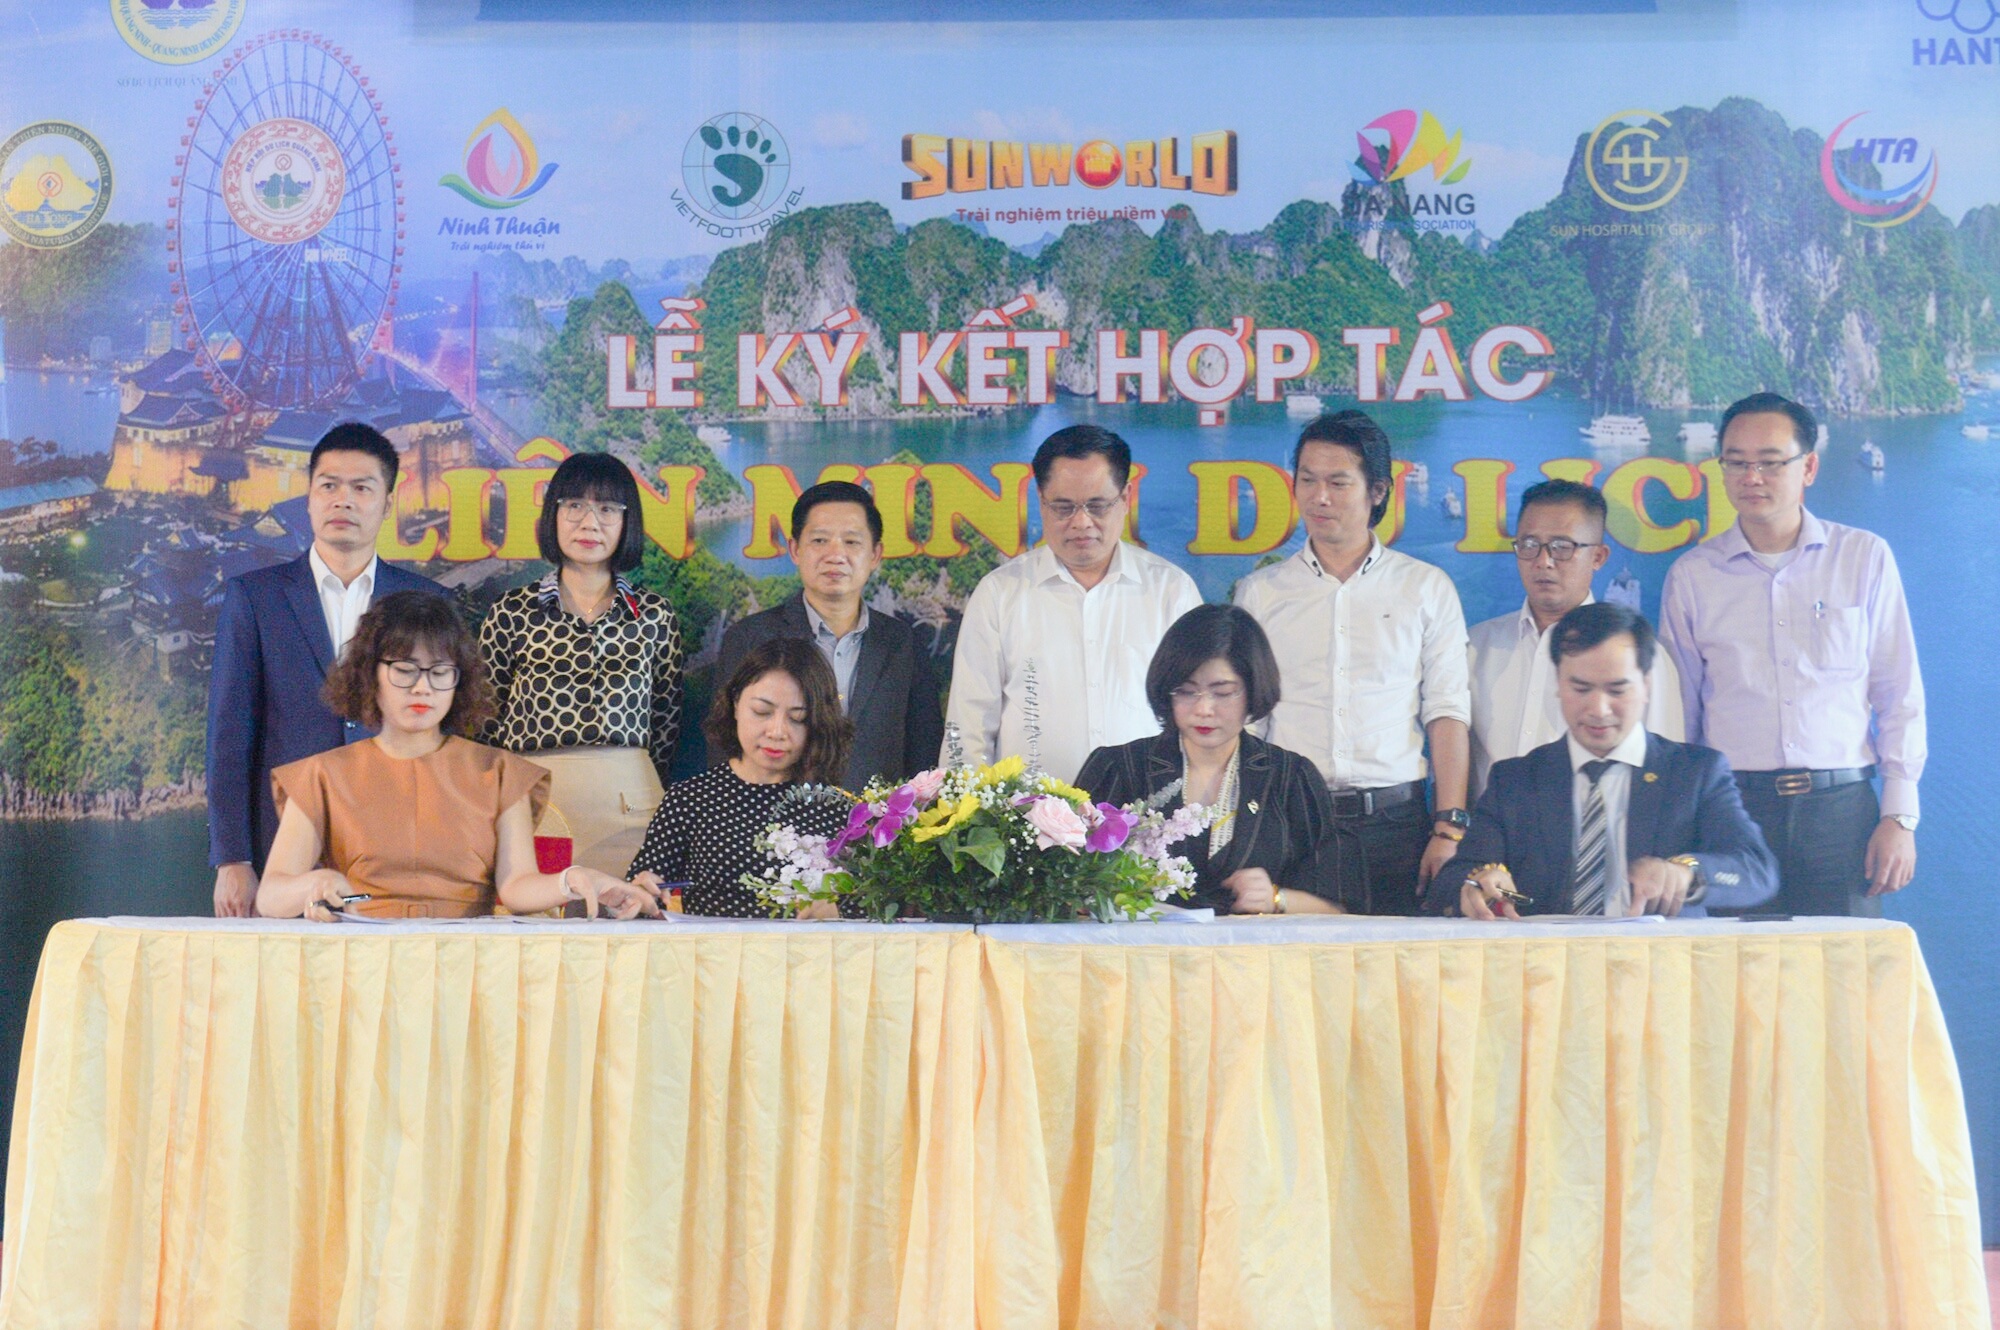 Liên minh kích cầu du lịch Thu Đông miền Bắc vừa được thành lập với sự tham gia của Sở Du lịch Quảng Ninh, Hiệp hội Du lịch Hà Nội cùng Hiệp hội Du lịch một số tỉnh khu vực Bắc - Trung - Nam, các doanh nghiệp kinh doanh du lịch, lữ hành trên cả nước.